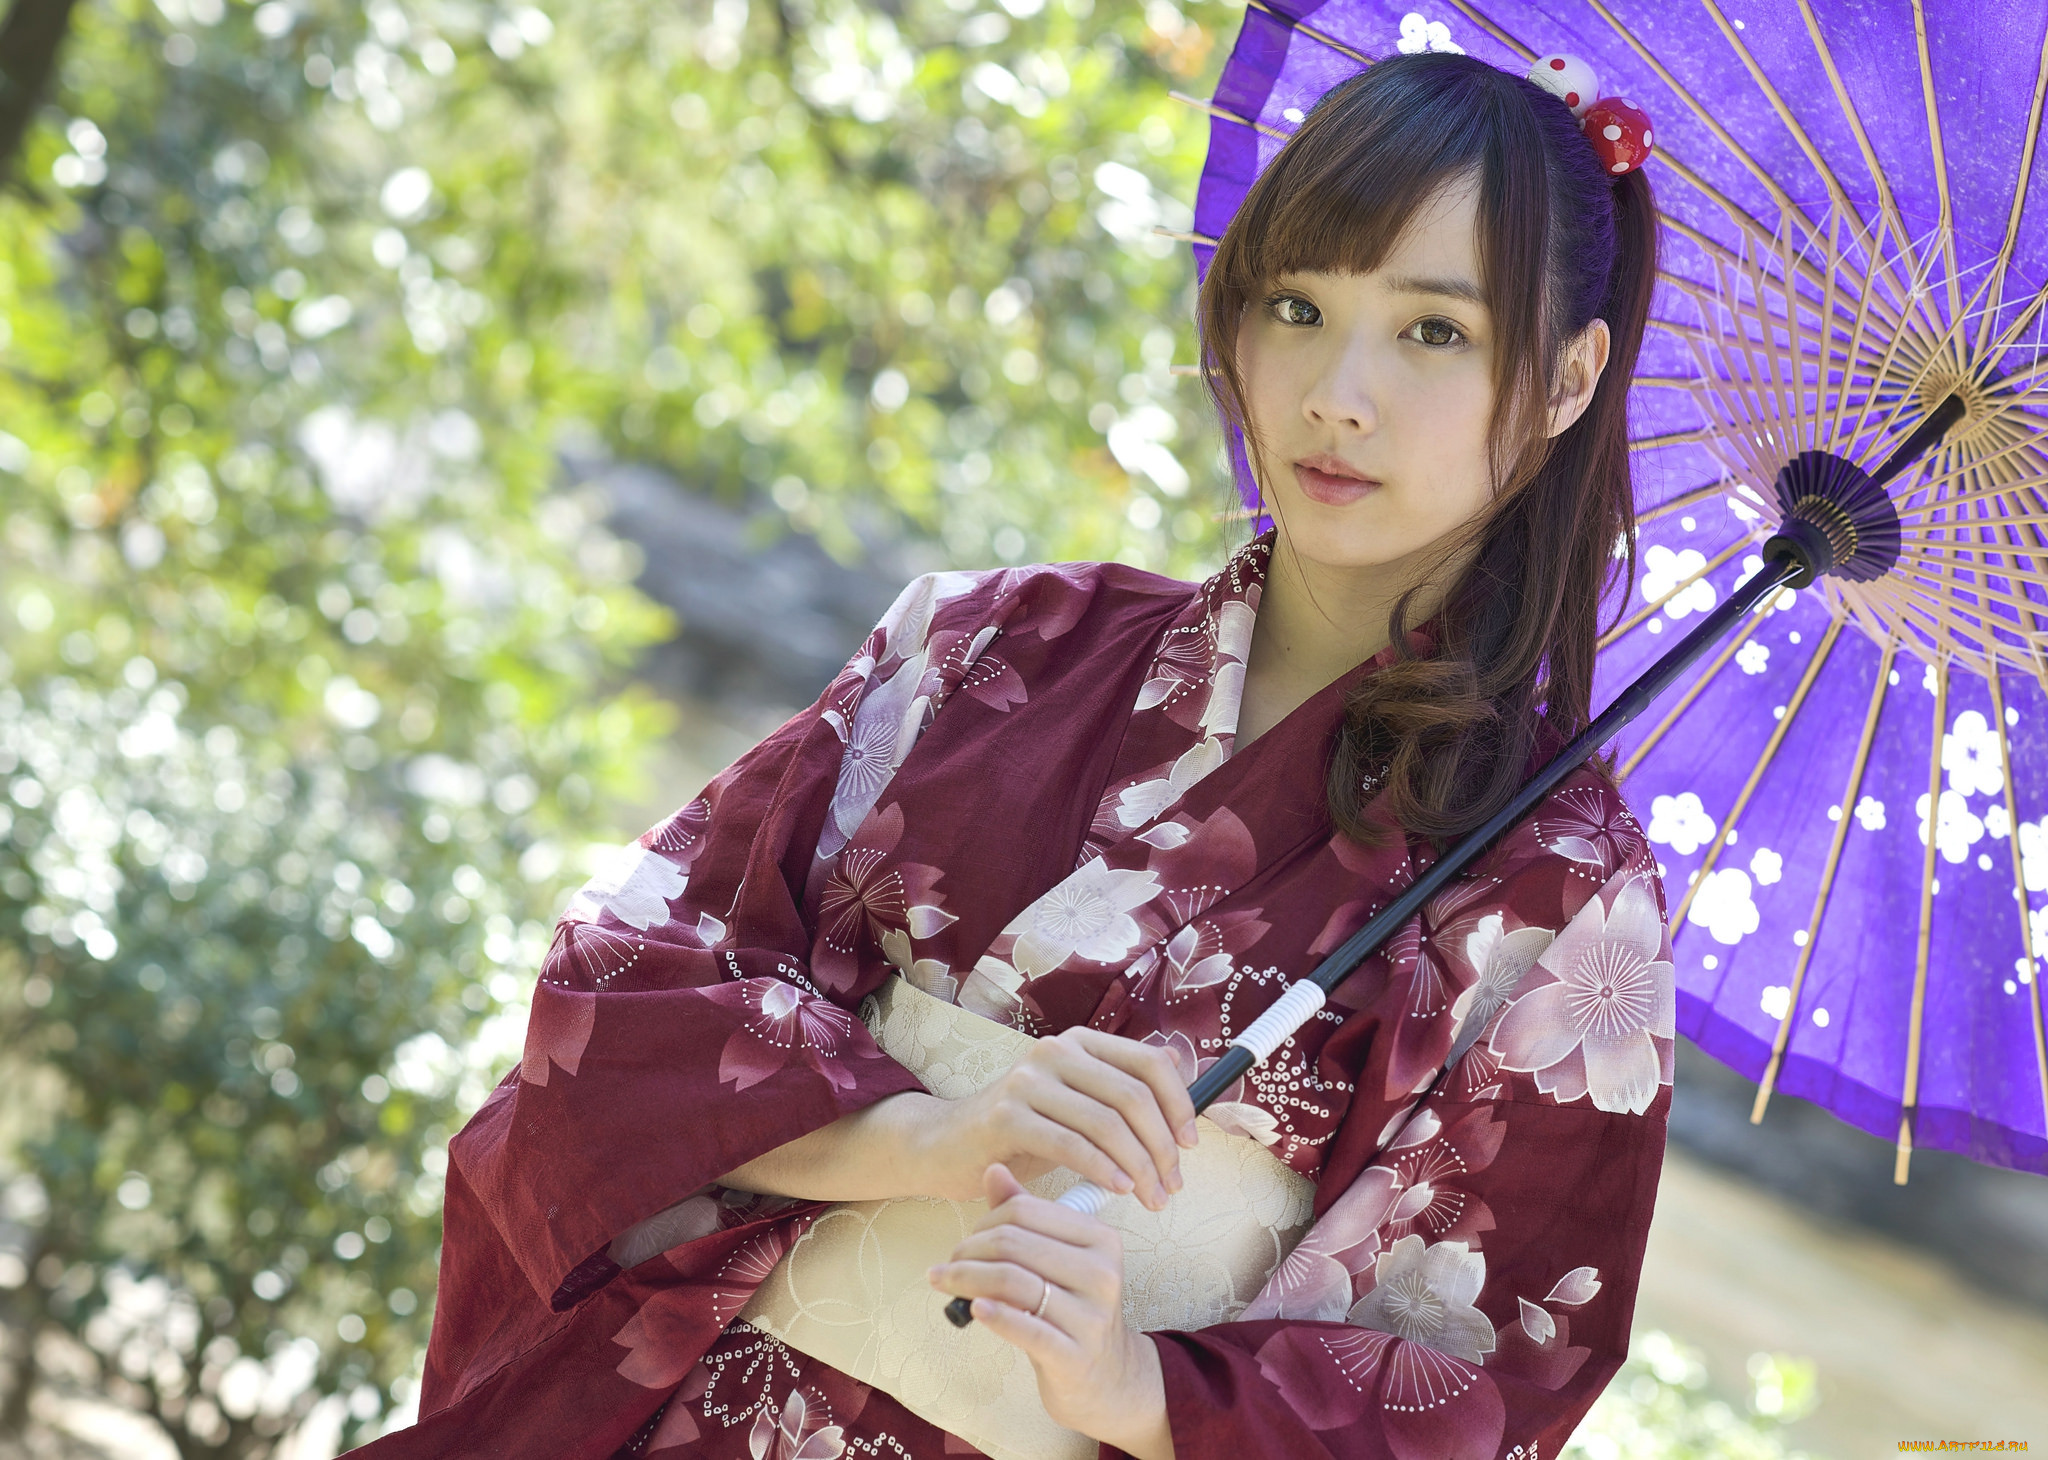 Показать красивую японку. Саори Хара в кимоно. Hara Saori японская актриса. Хисако Канэмото в кимоно. Саори Хара в кимоно 18.